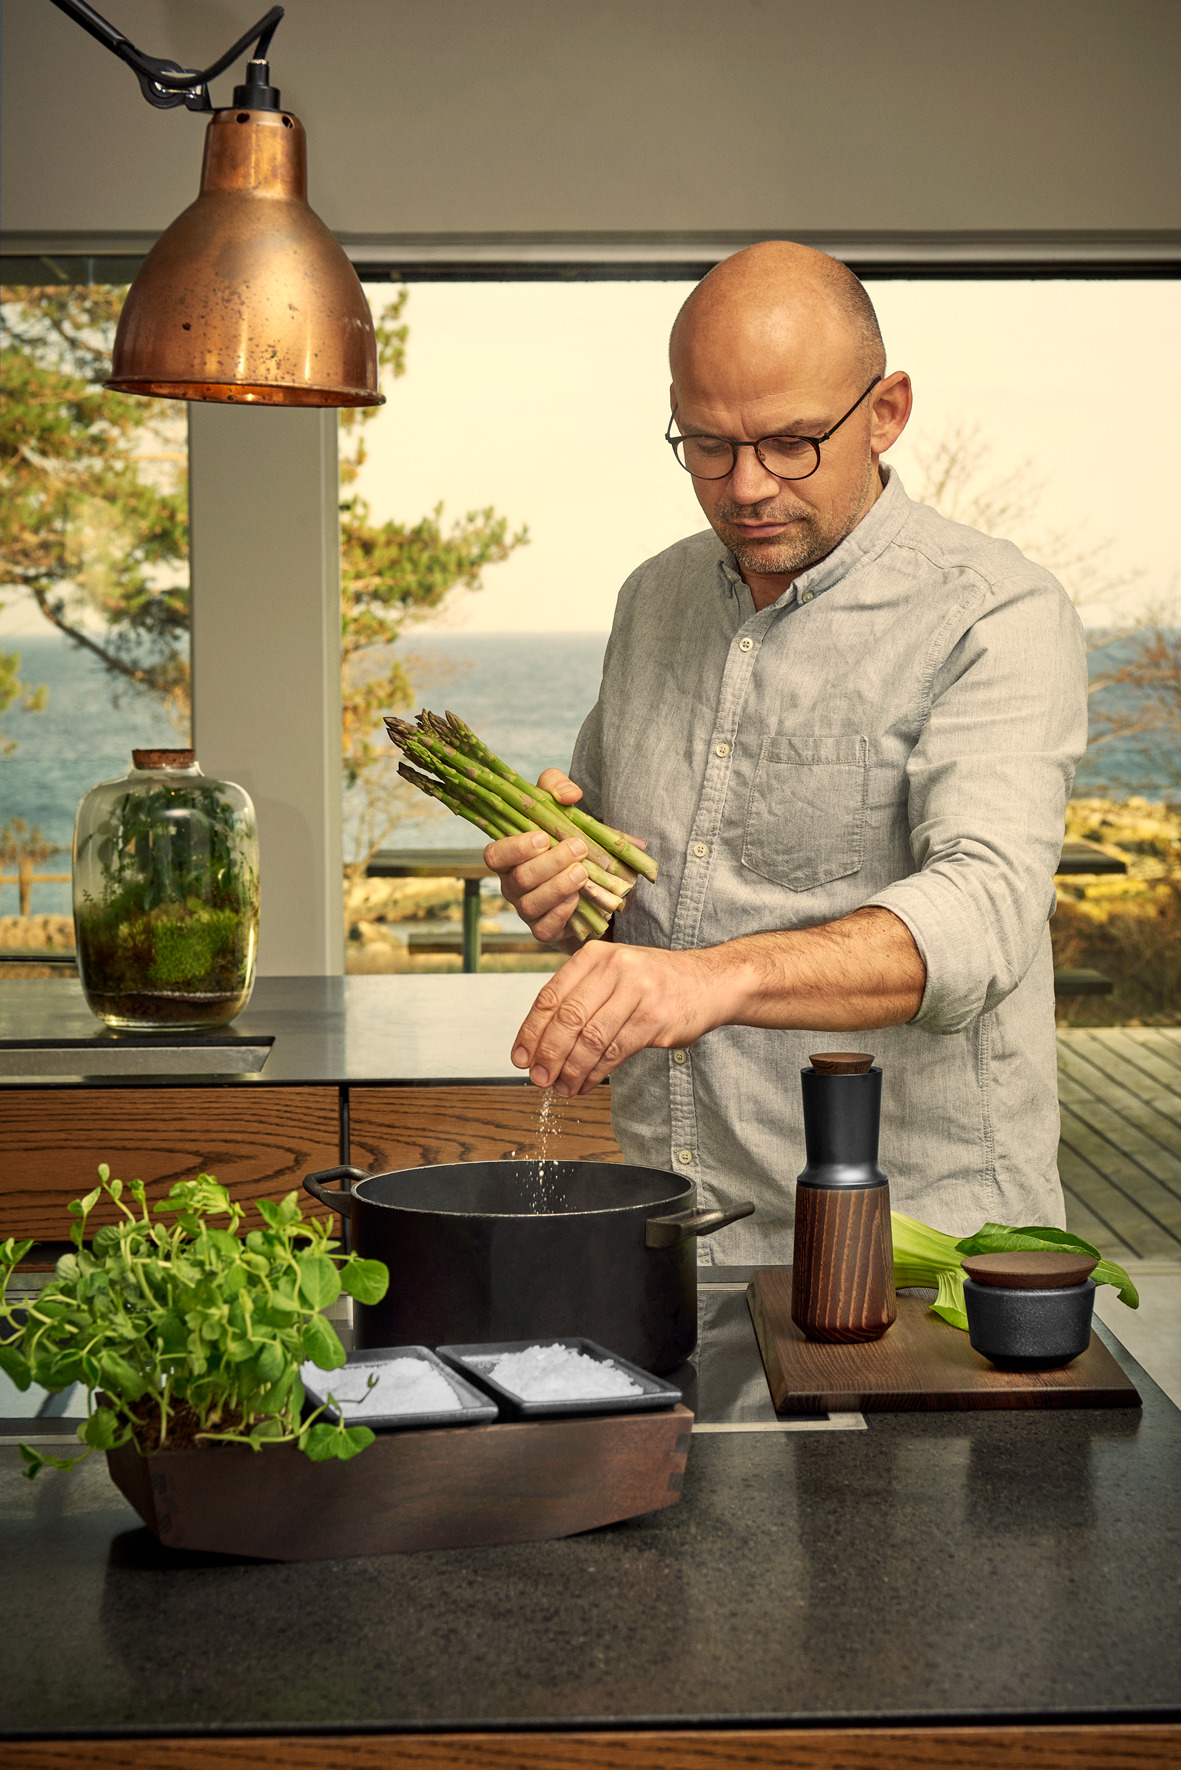 Jesper Vollmer in a kitchen with herbs